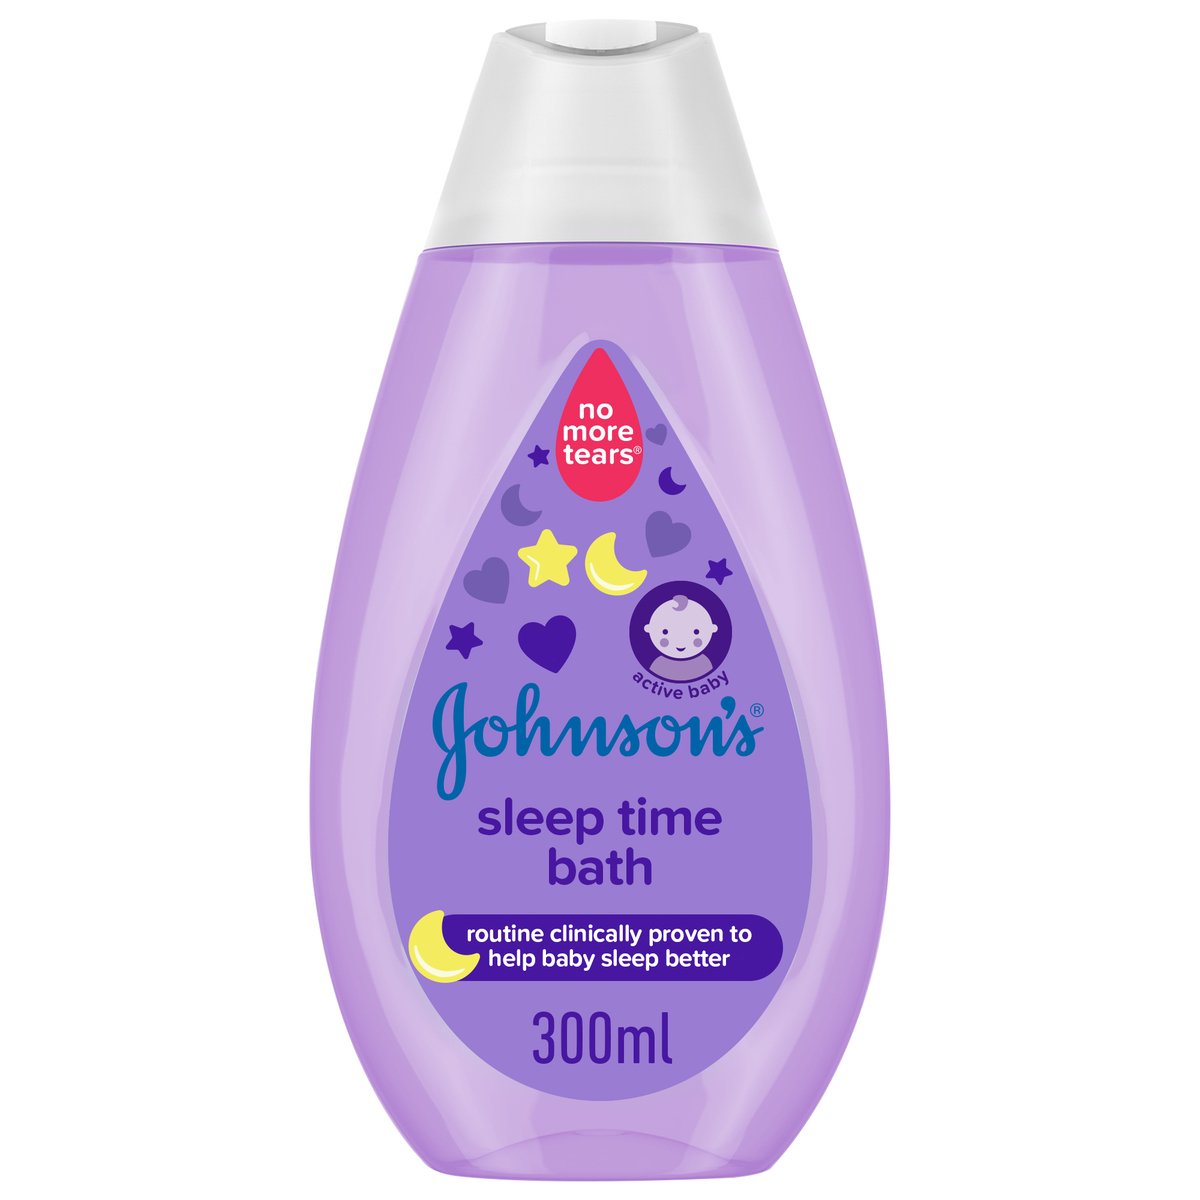 Johnson's Bath Sleep Time Bath 300ml